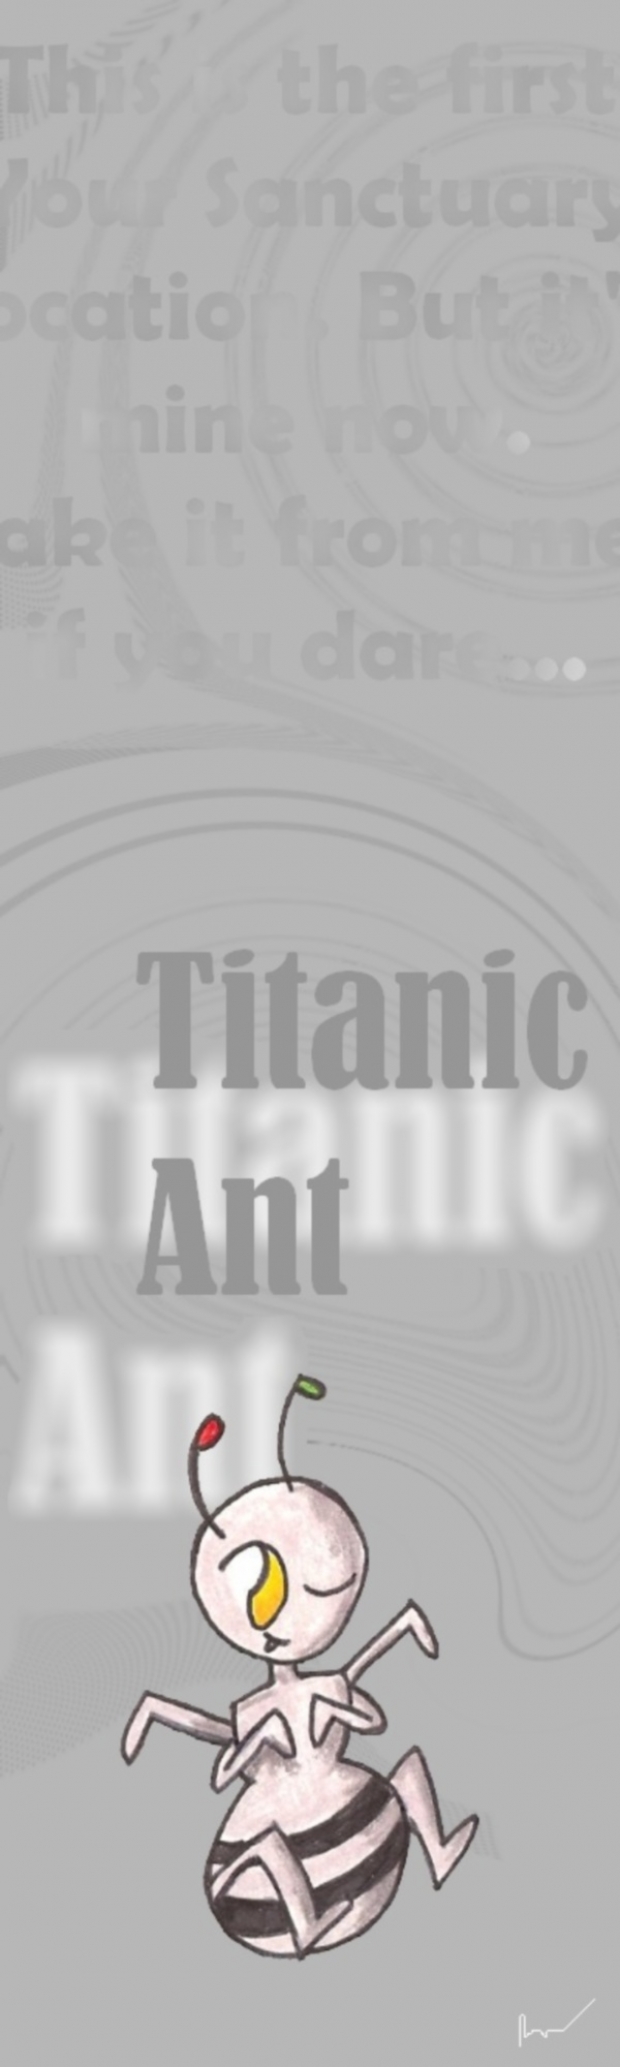 Titanic Ant